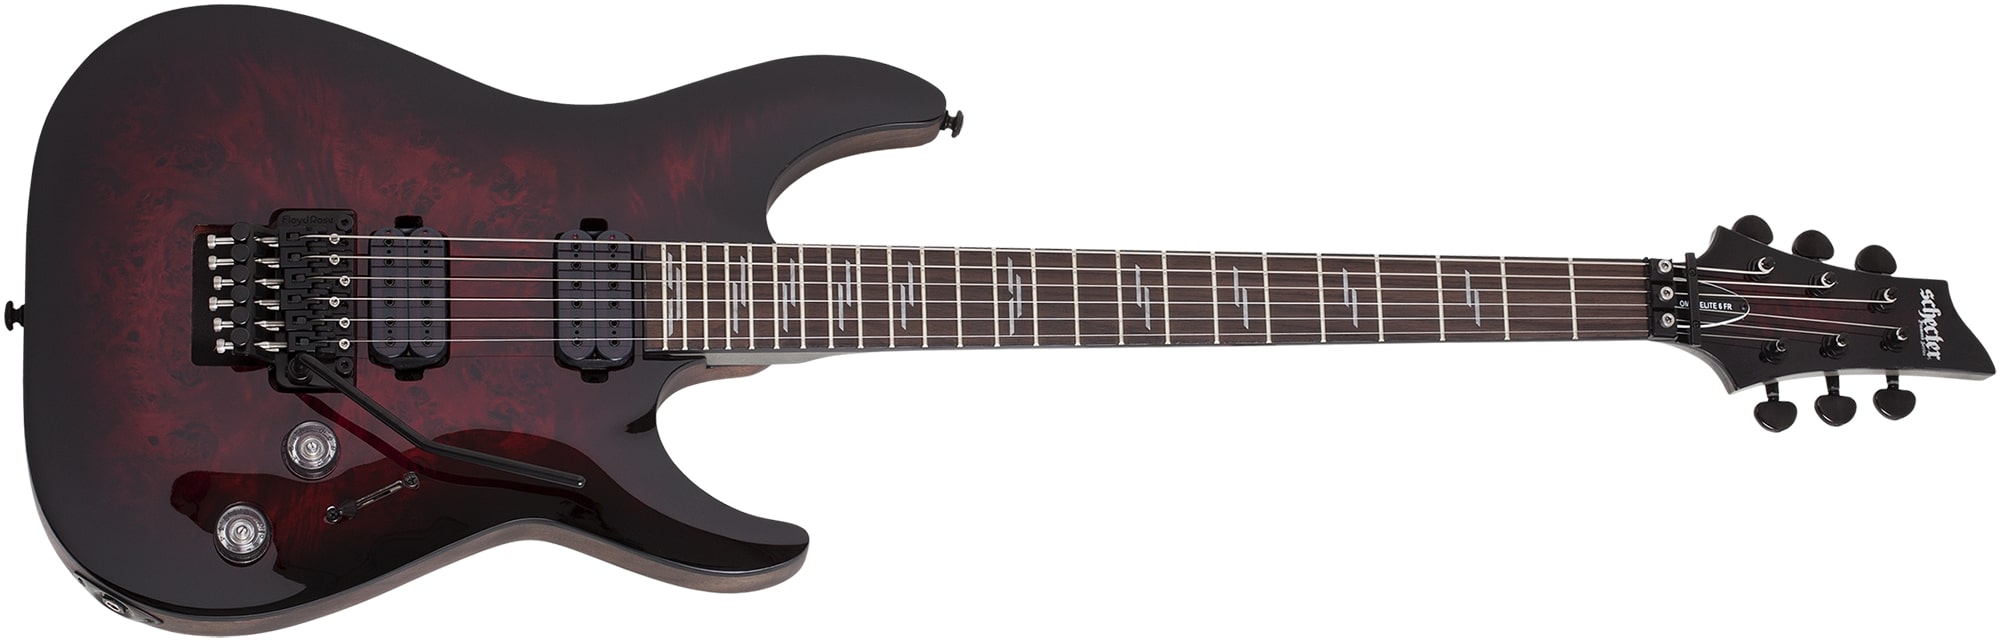 Schecter Omen Elite-6 Floyd Rose Electric Guitar Black Cherry Burst 2453-SHC